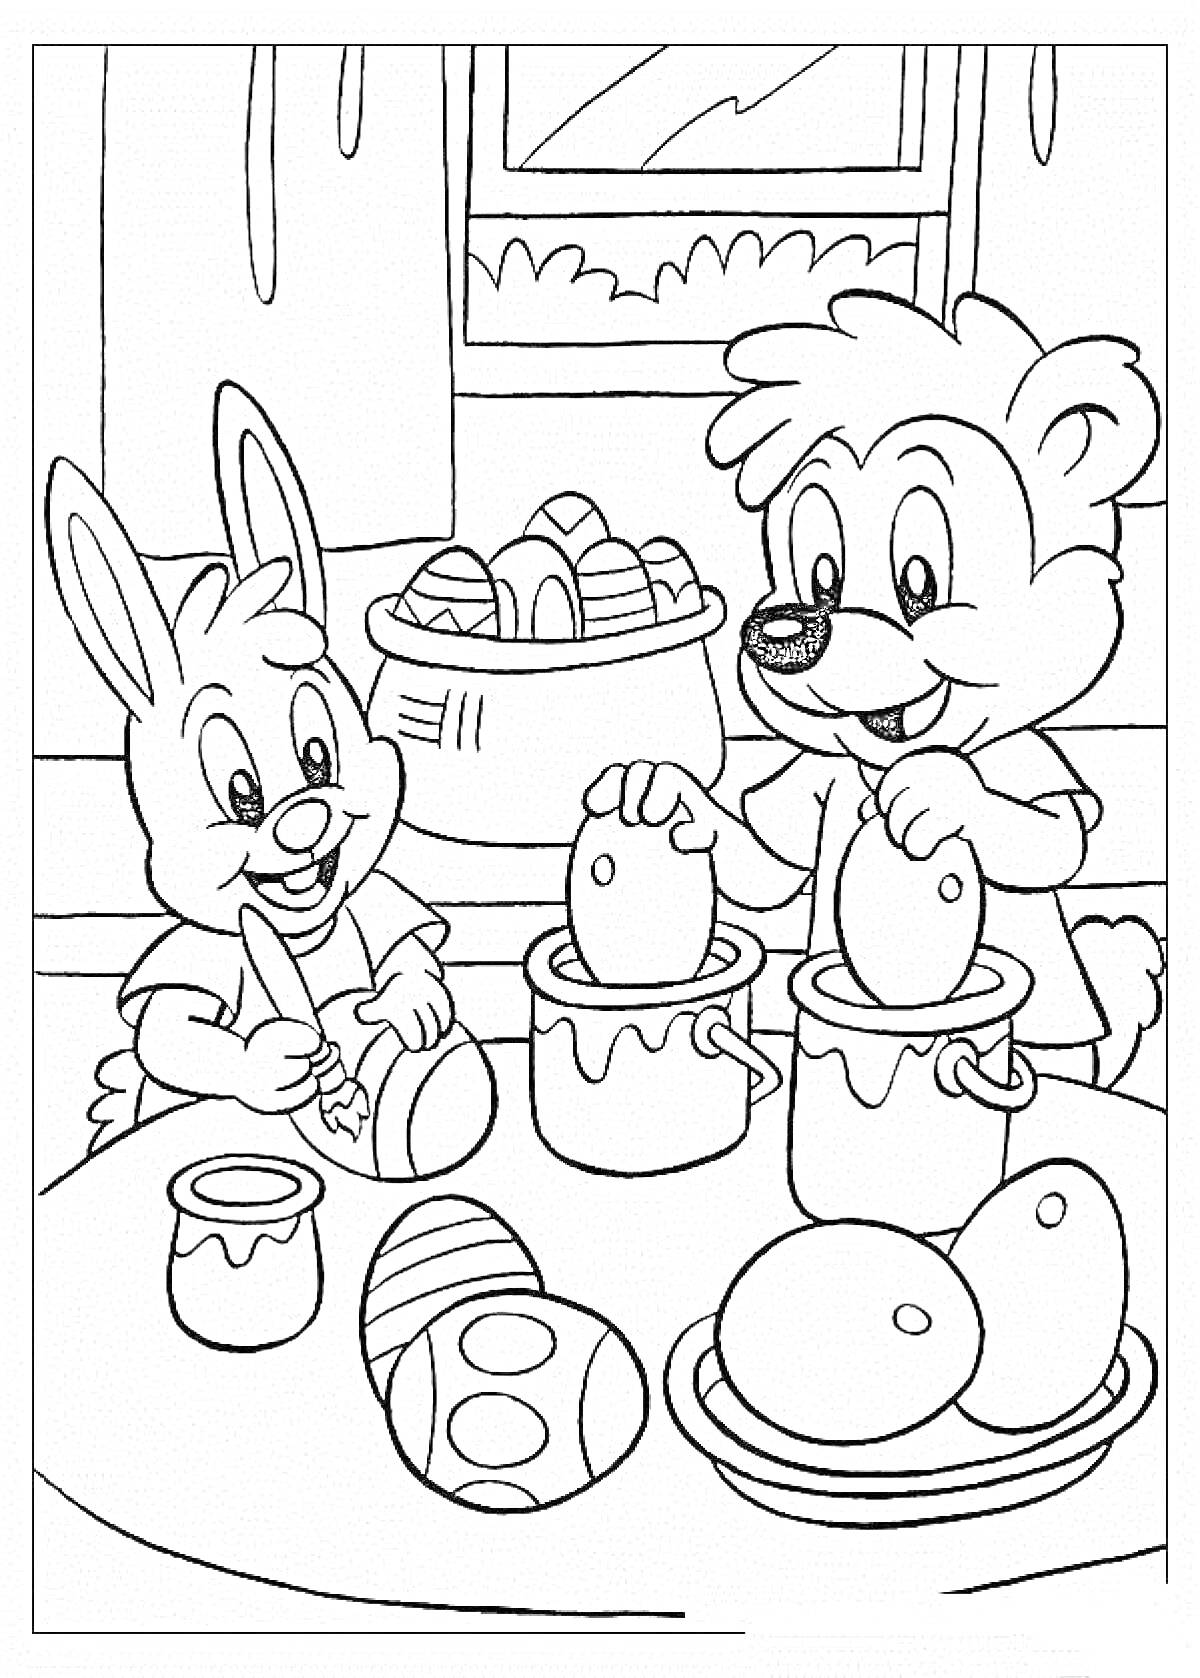 Кролик и медвежонок красят пасхальные яйца на кухне